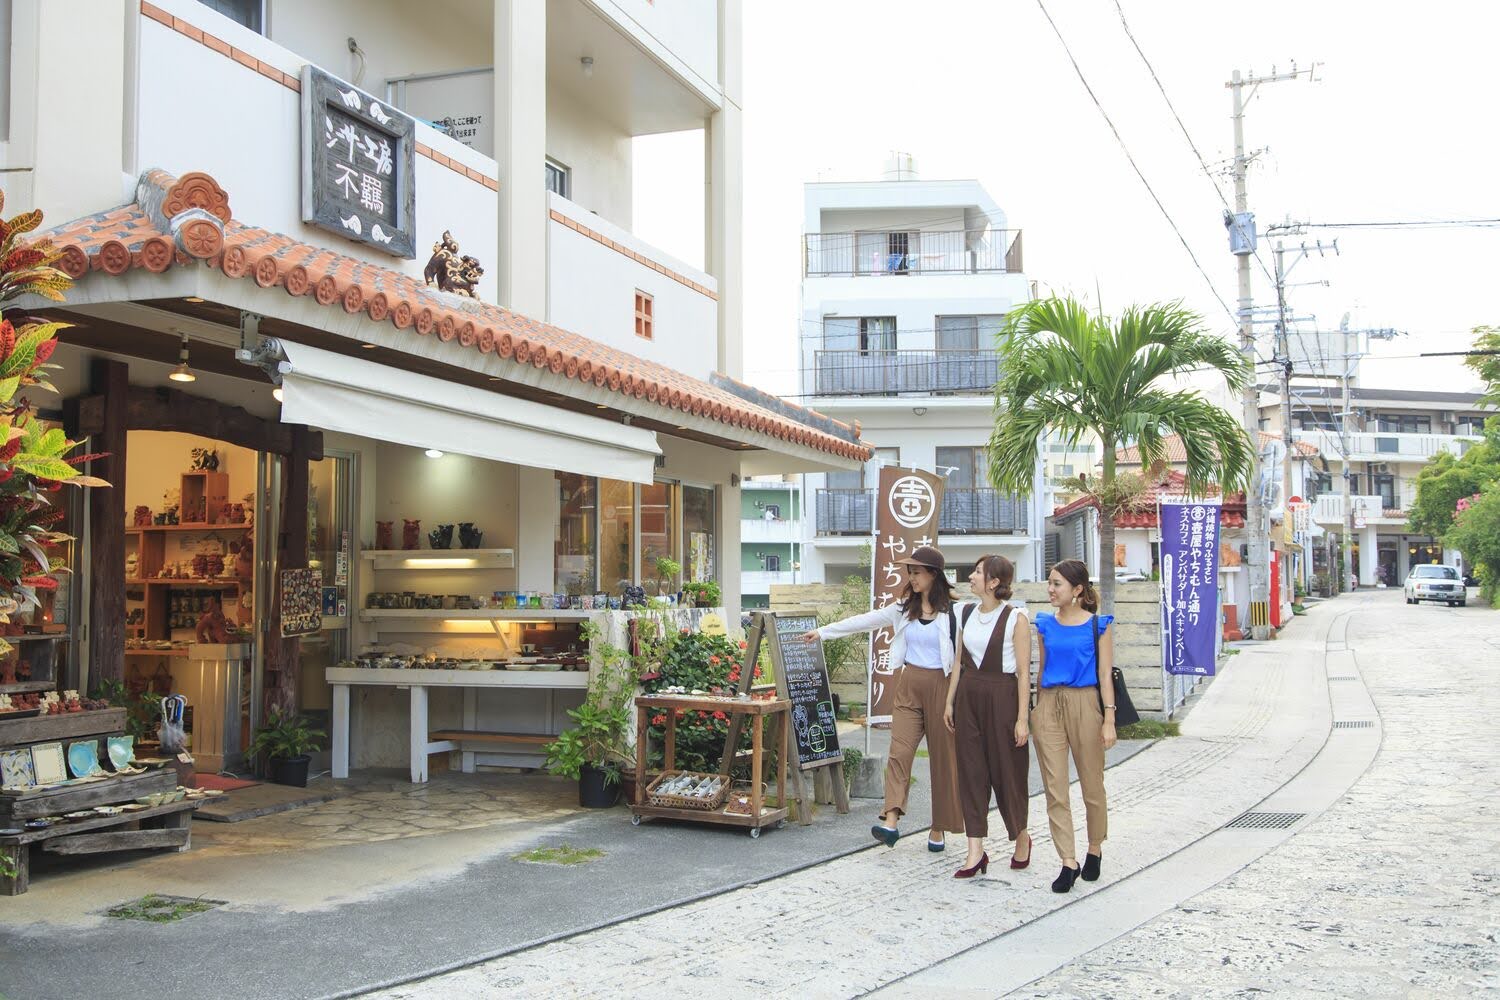 沖縄文化体験お土産がつまった壺屋やちむん通り那覇市 沖縄の観光情報はFeel Okinawa